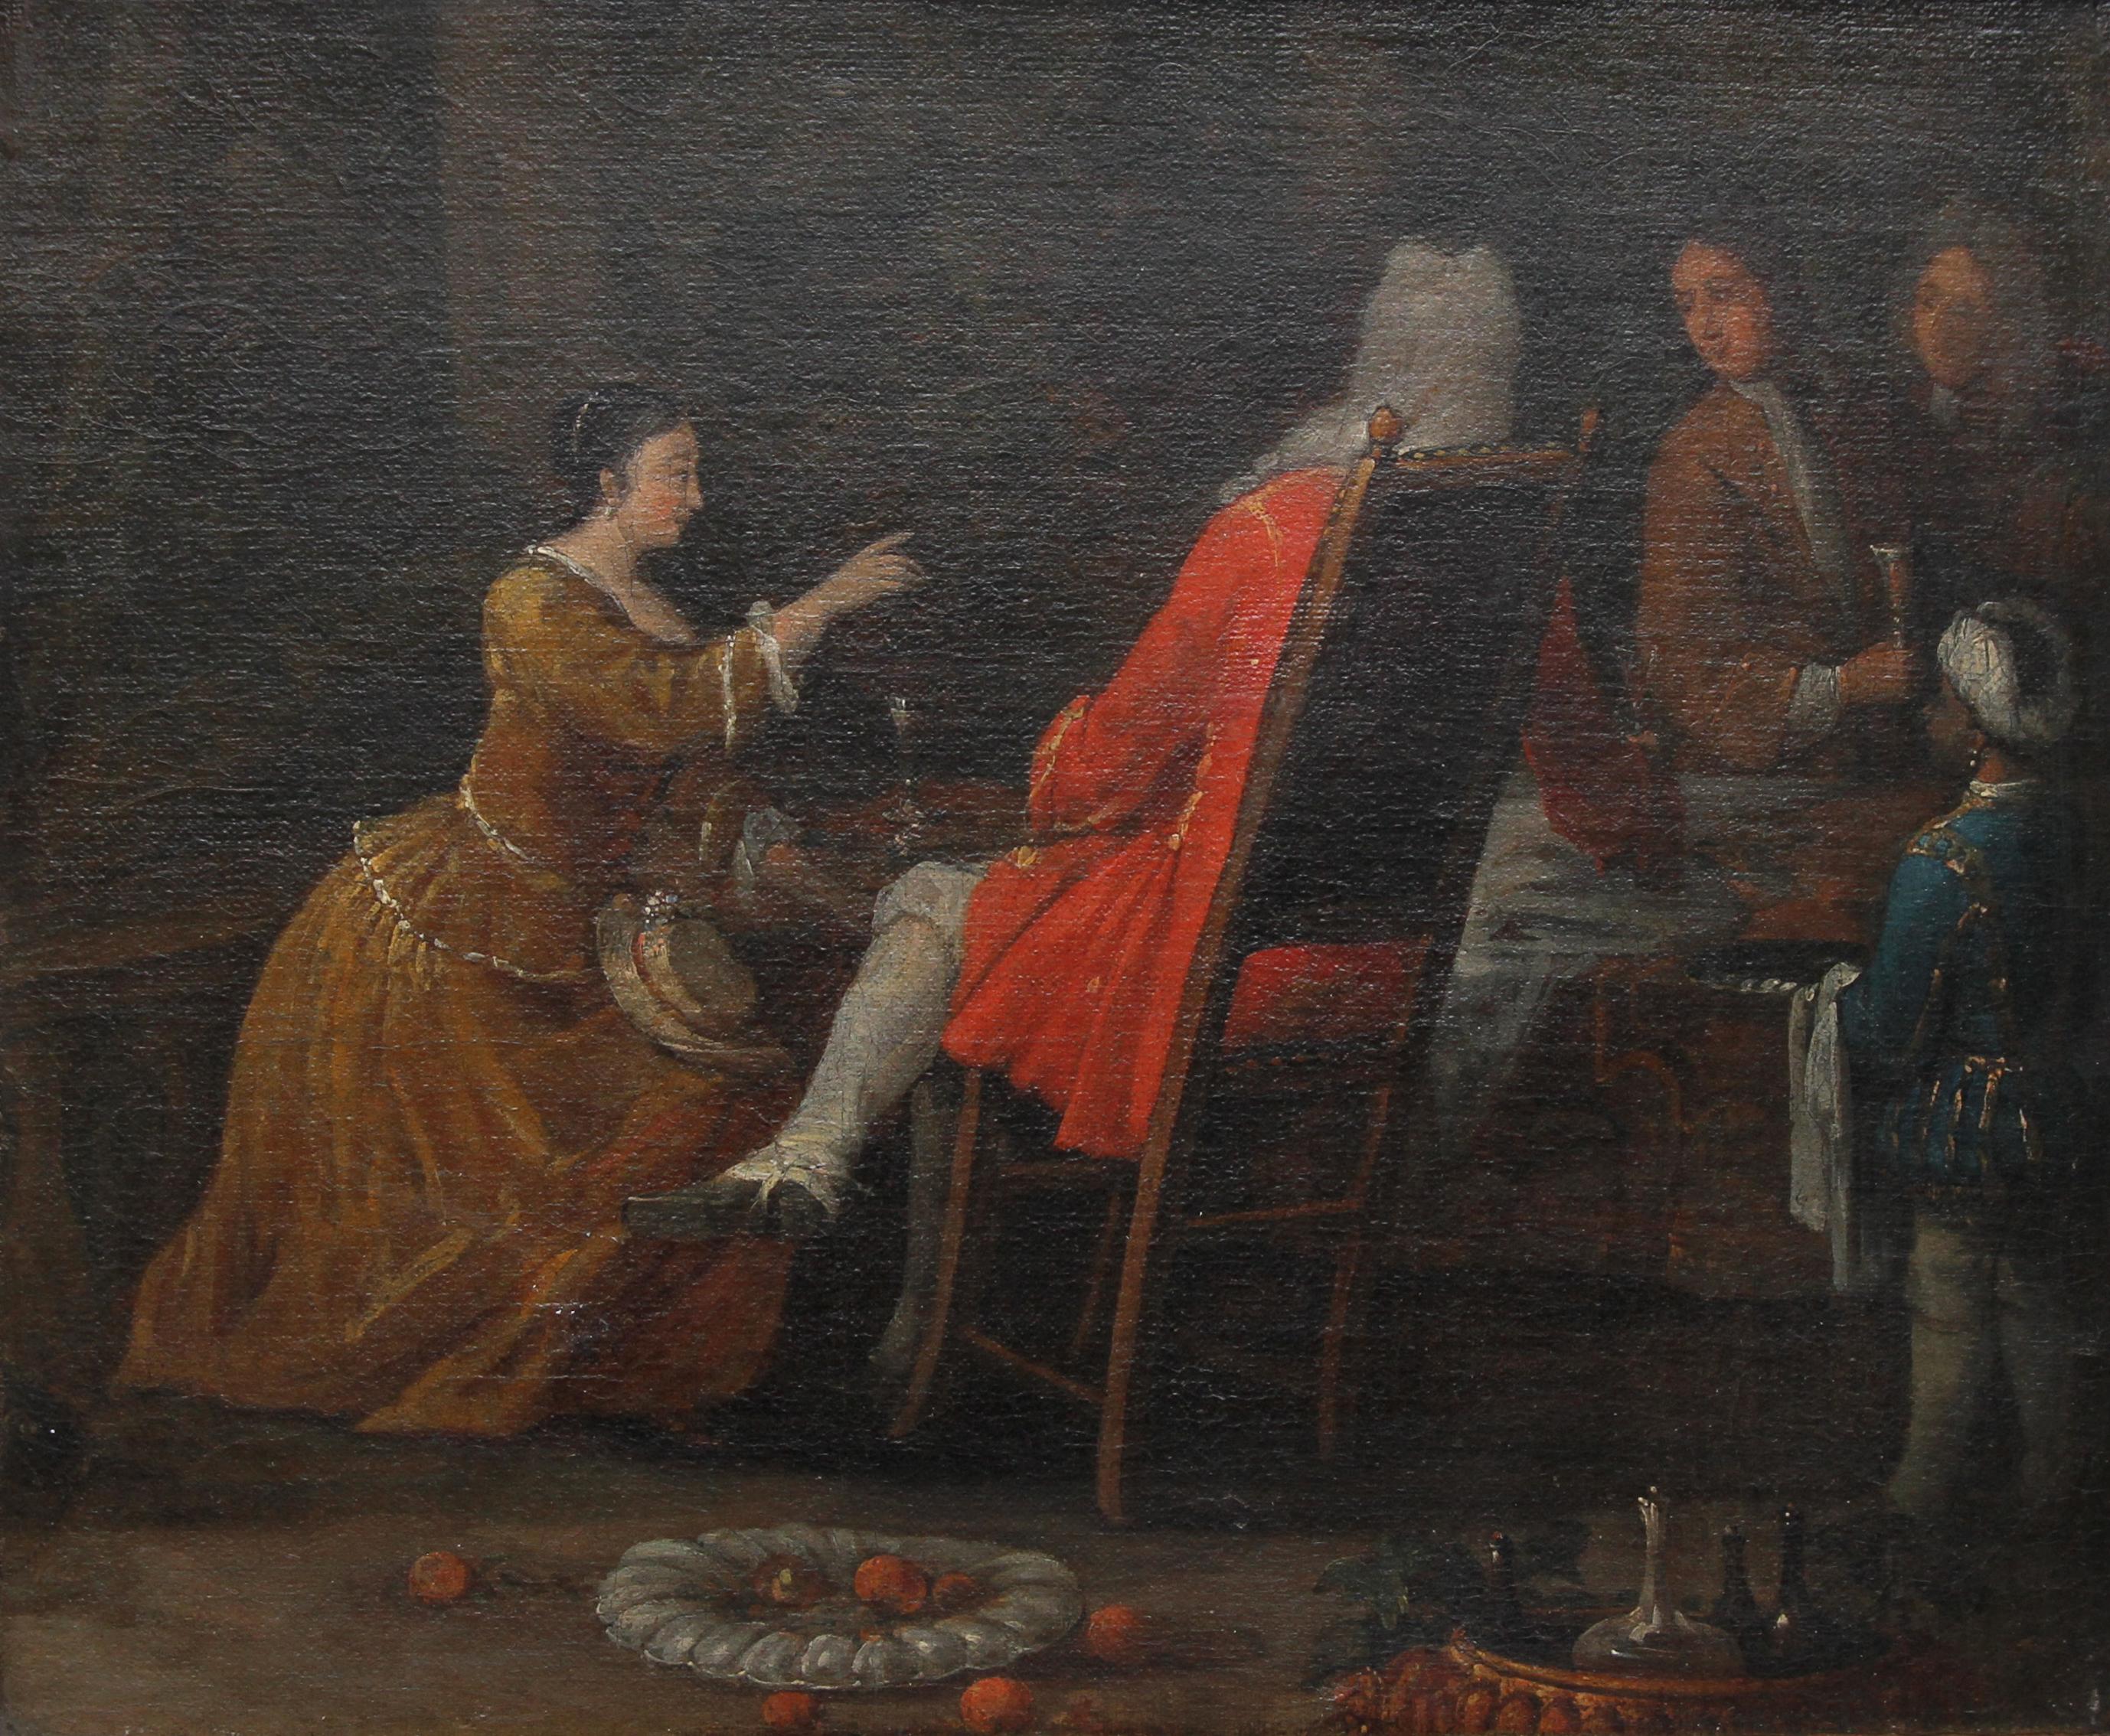 Serviergeschirr – Britisches Ölgemälde eines alten Meisters aus dem 18. Jahrhundert, historisches Interieur (Alte Meister), Painting, von (Circle of) William Hogarth